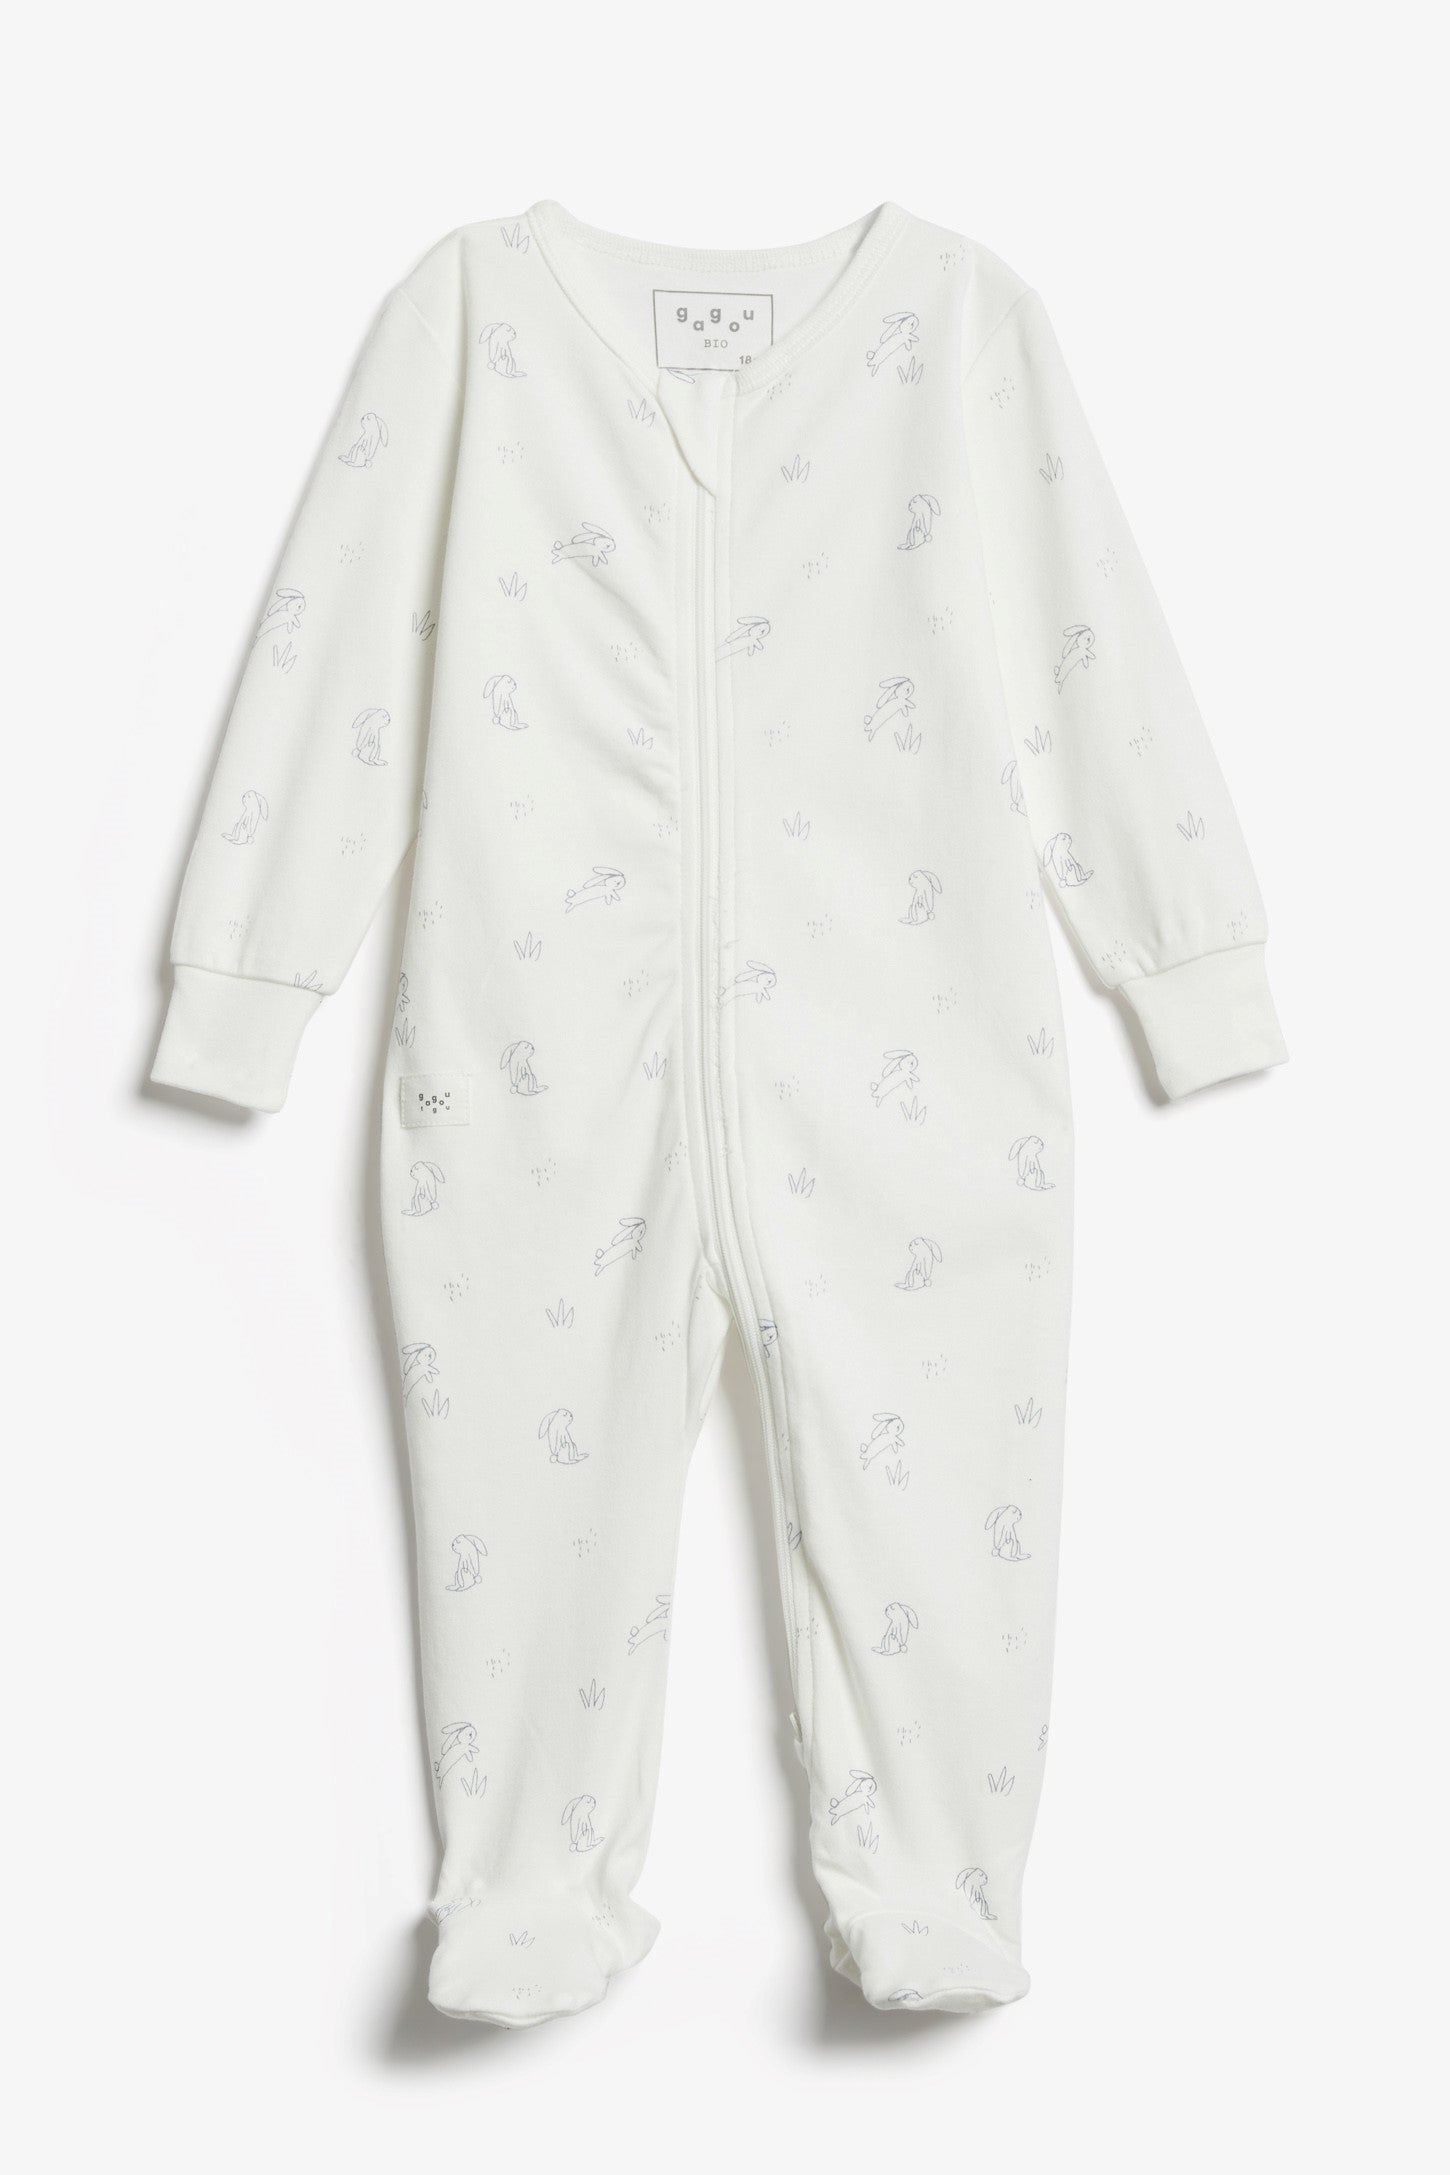 Pyjama 1-pièce imprimé, coton bio, 2T-3T - Bébé && BLANC